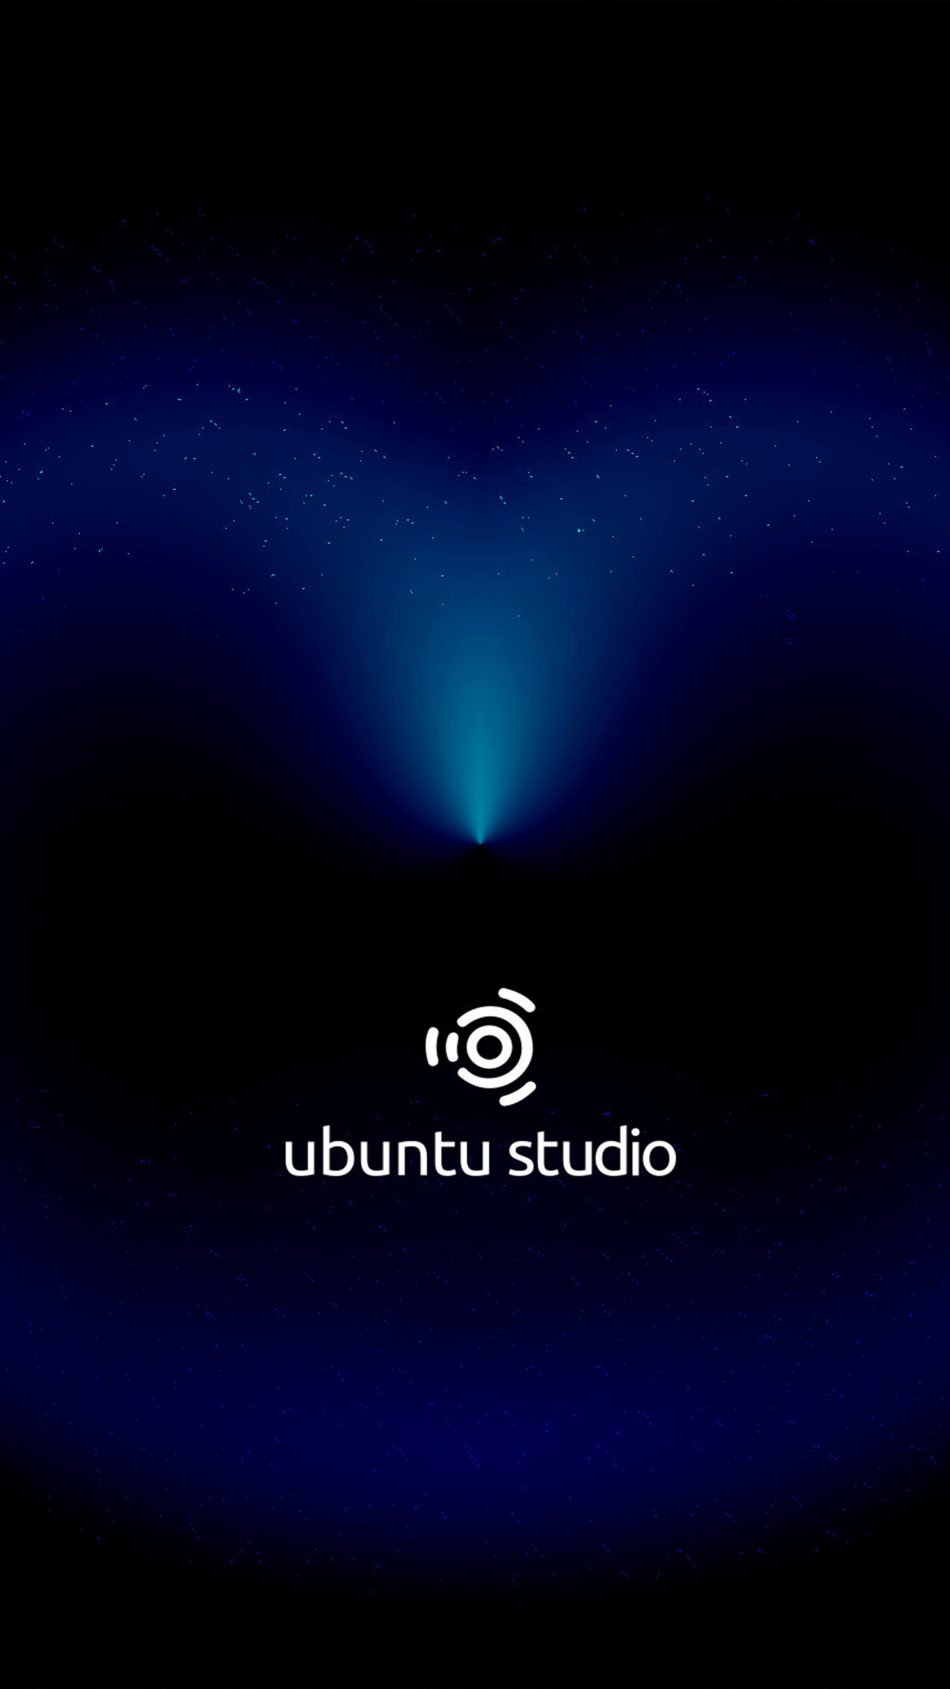 Ubuntu Studio Dark Cosmic Black 4K Ultra HD Mobile Wallpaper